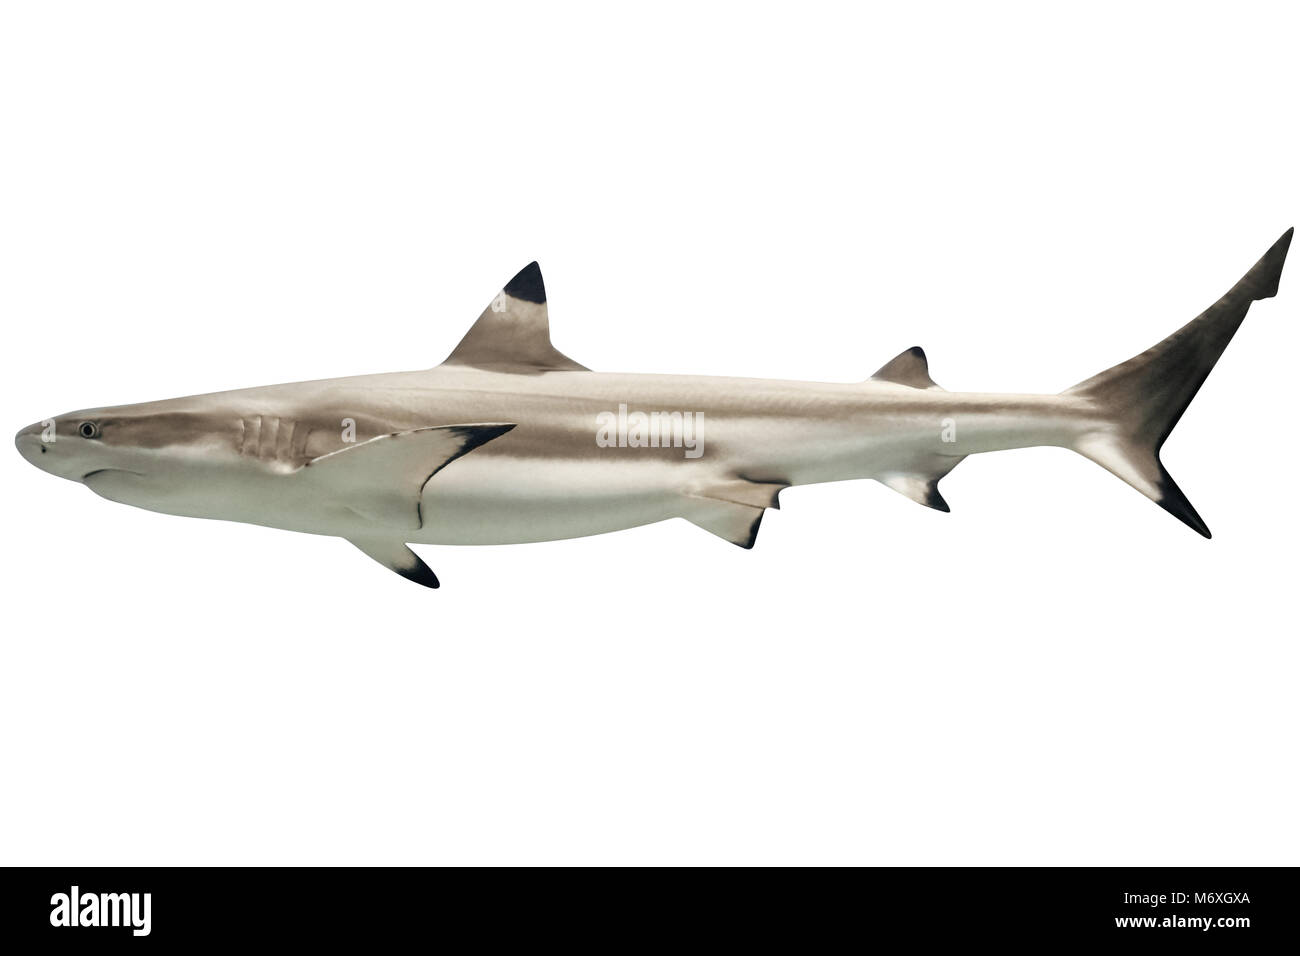 Vista laterale della Australian blacktip shark Carcharhinus tilstoni, isolato su bianco. È una specie di squalo requiem, famiglia Carcharhinidae, endemico a nord e a est dell'Australia. Copia dello spazio. Foto Stock